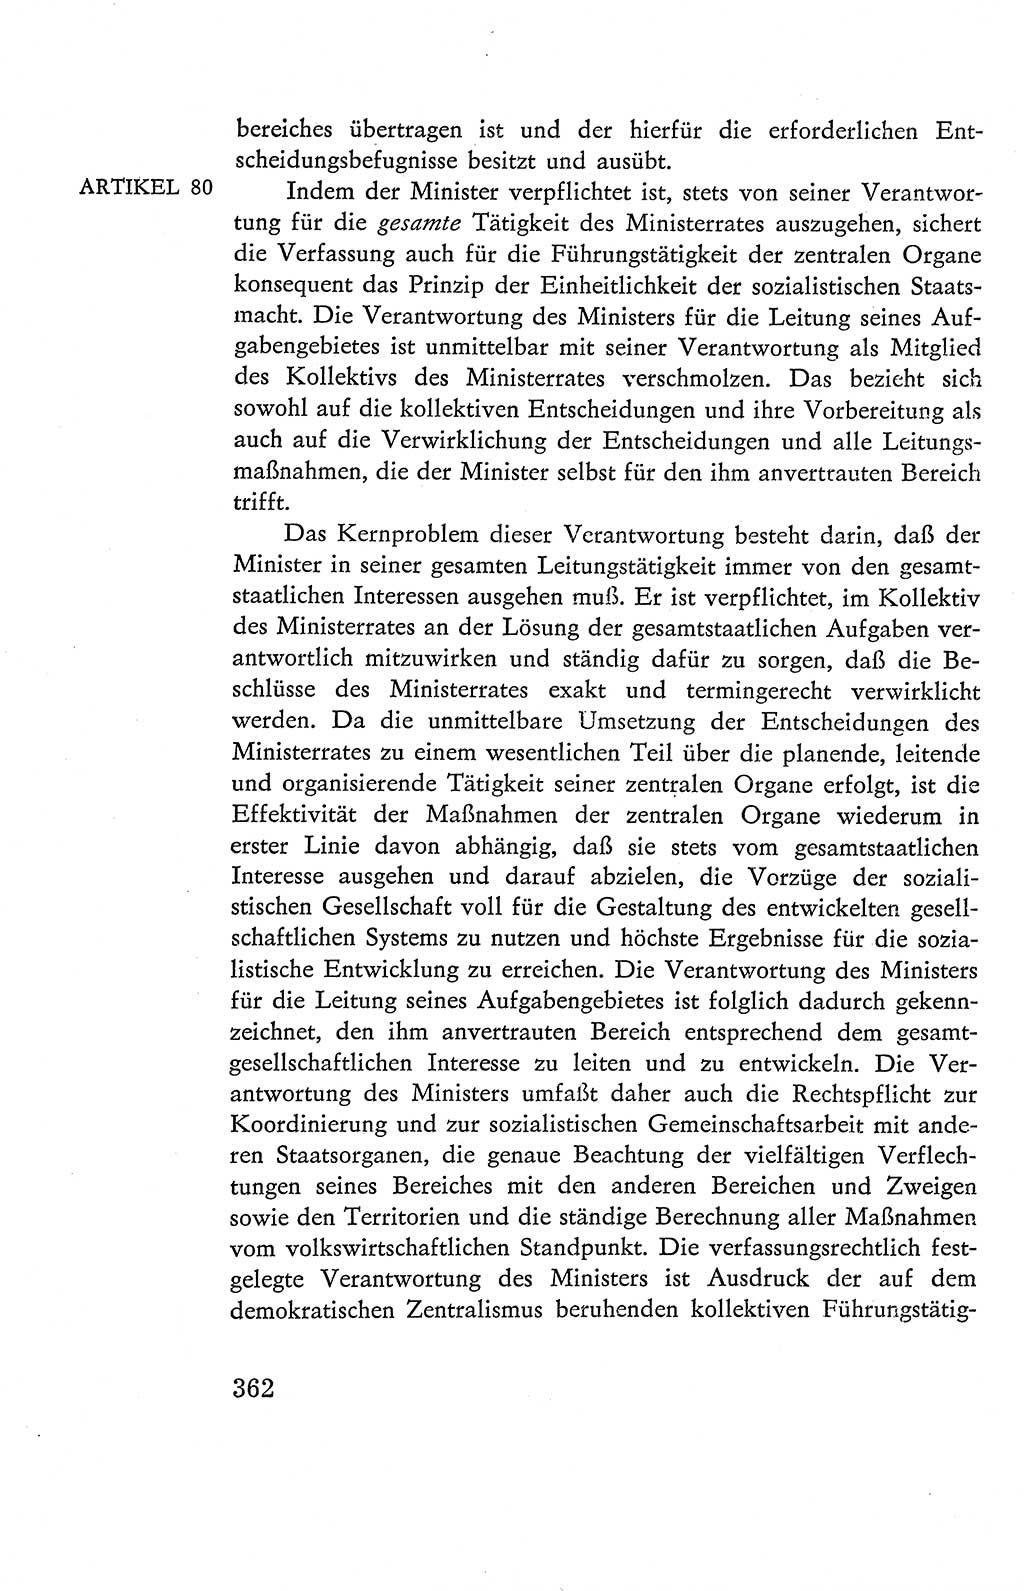 Verfassung der Deutschen Demokratischen Republik (DDR), Dokumente, Kommentar 1969, Band 2, Seite 362 (Verf. DDR Dok. Komm. 1969, Bd. 2, S. 362)